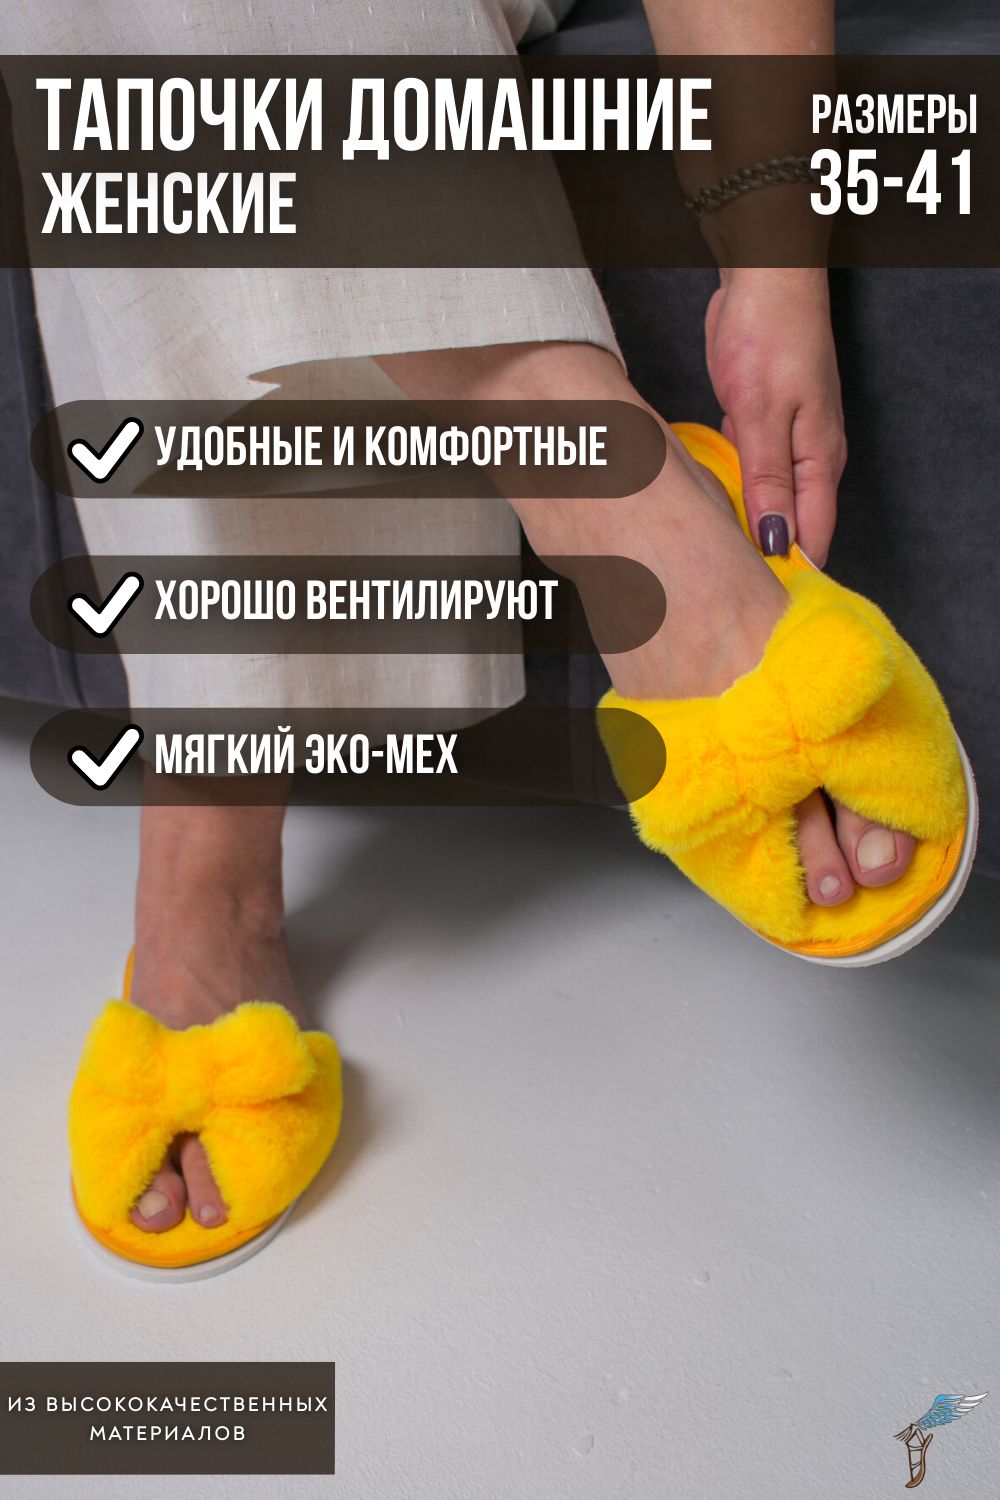 Тапочки домашние женские С-6ЖКБ-МР - желтый